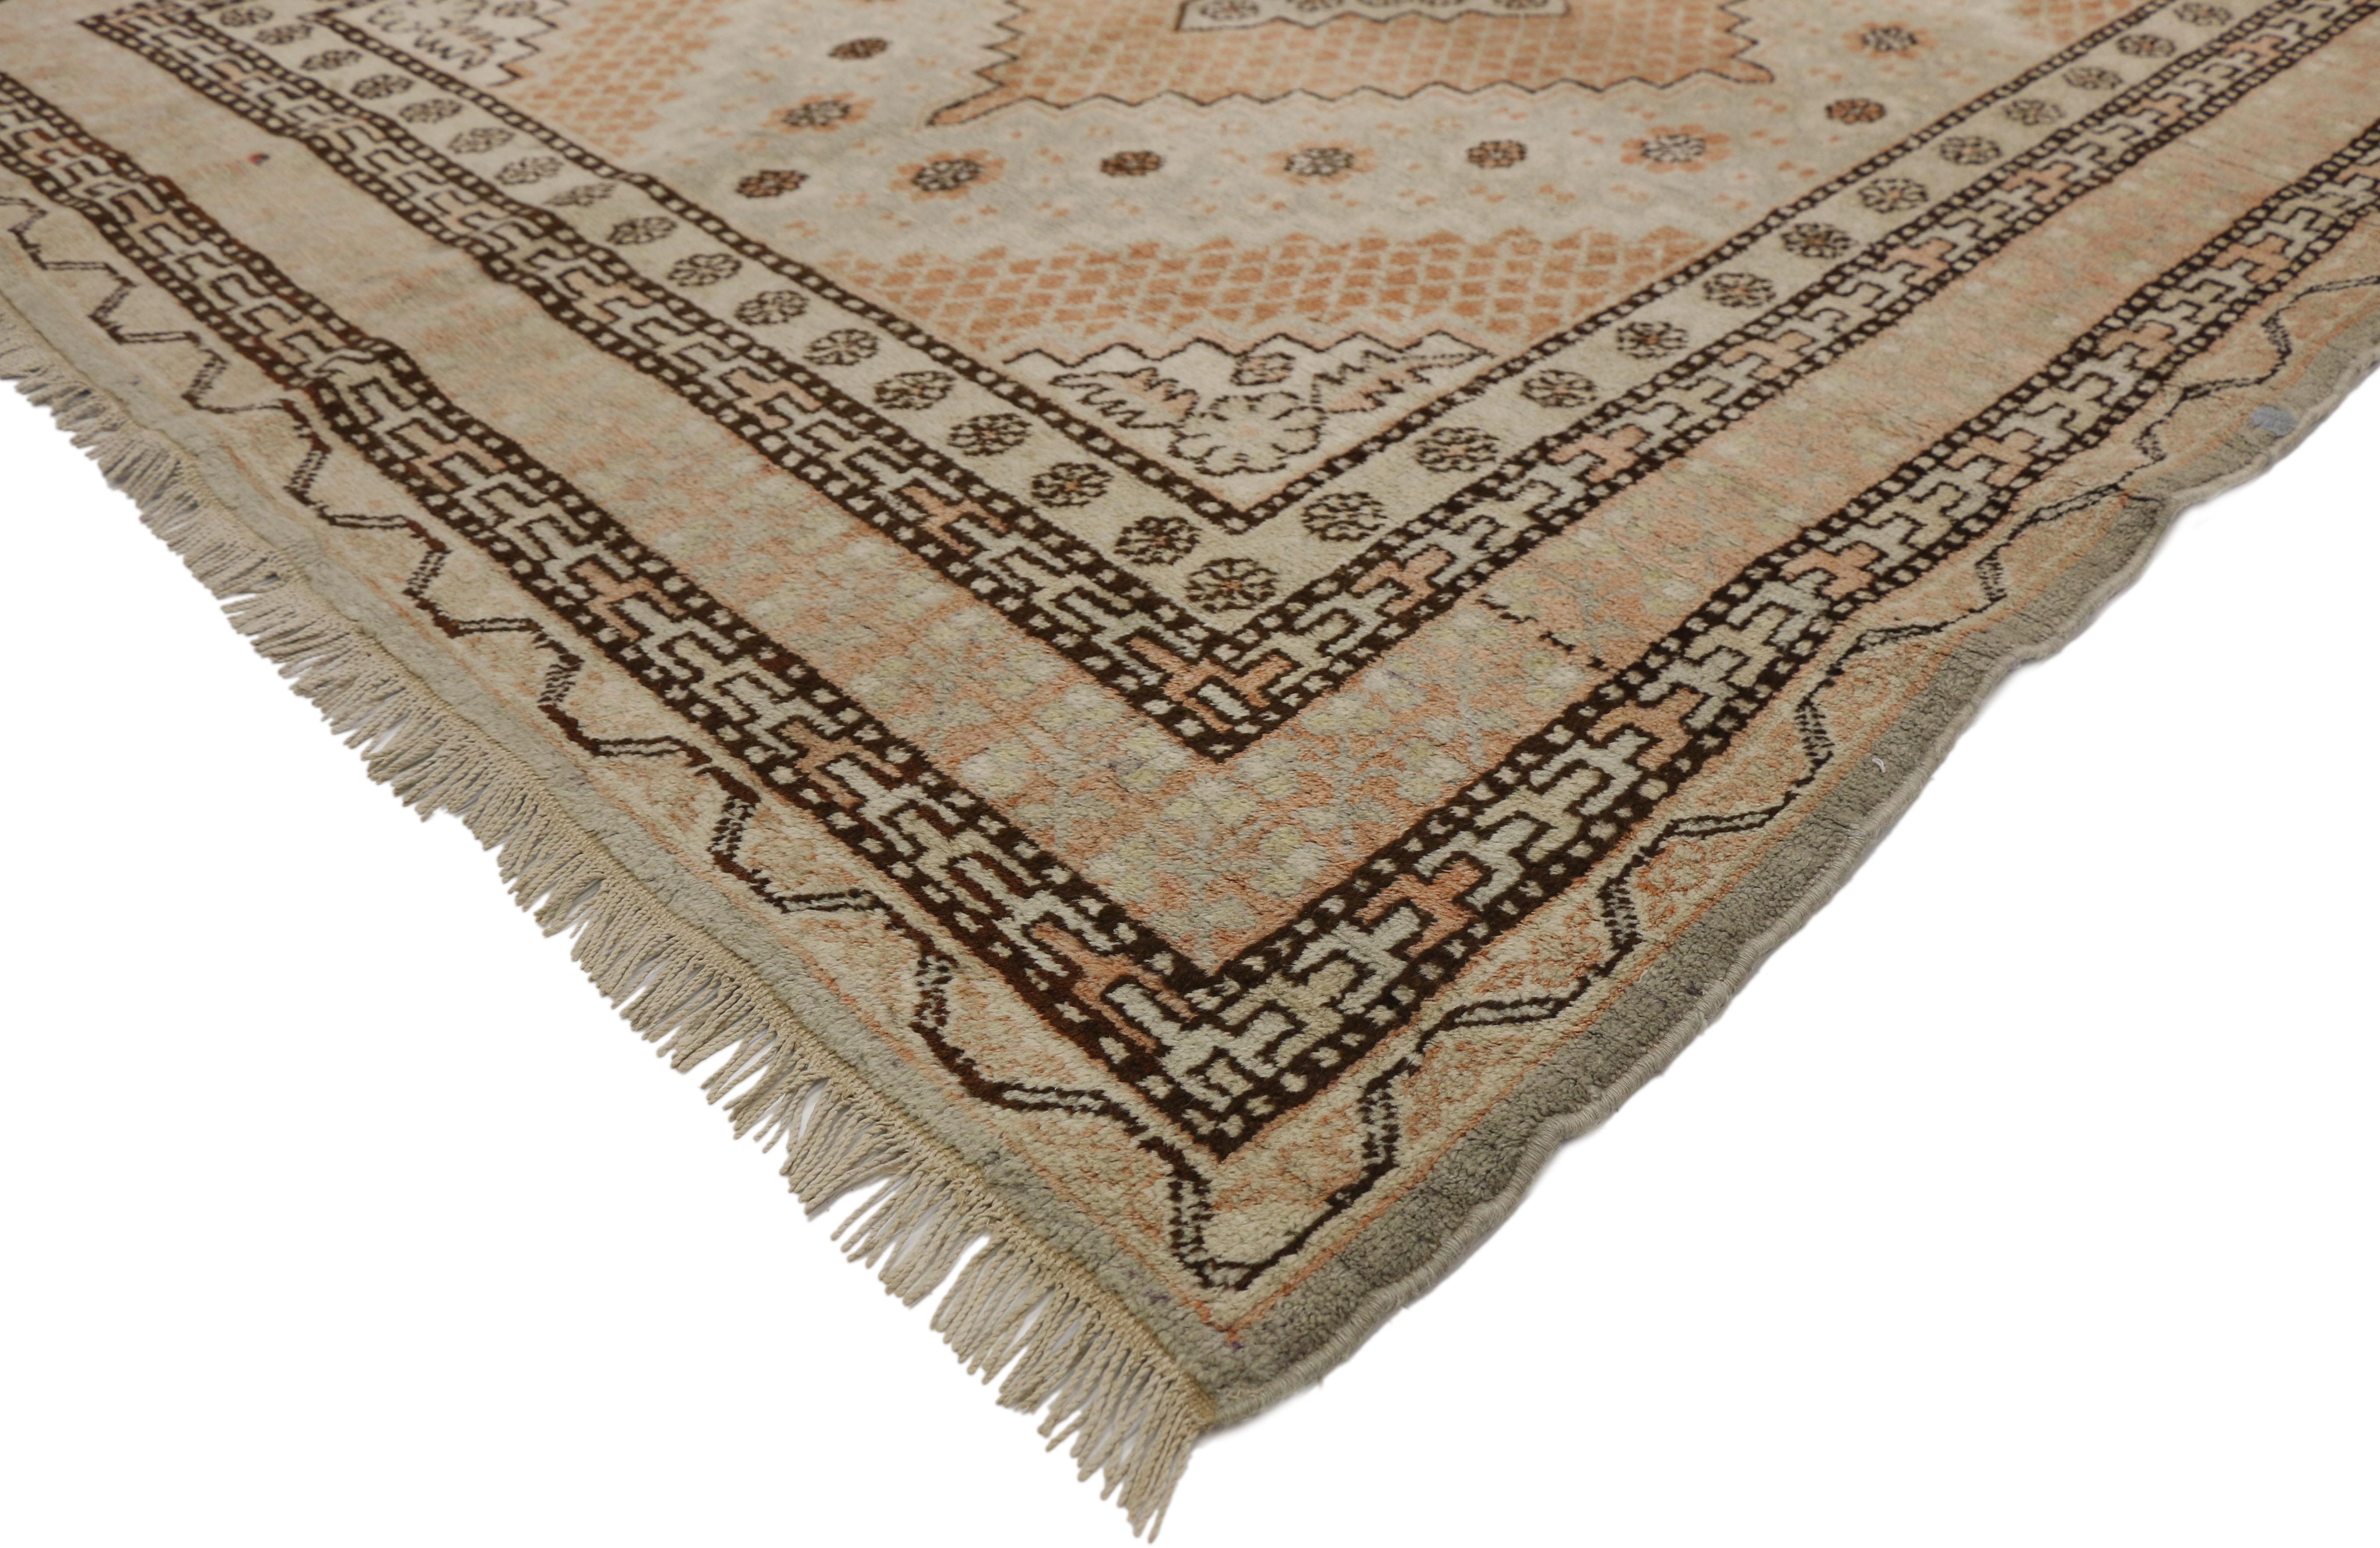 77310 Turkestan-Khotan-Teppich im mediterranen Arts & Crafts-Stil. Dieser Galerie-Teppich aus handgeknüpfter Wolle aus Khotan zeigt zwei gestufte, rautenförmige Medaillons, die mit Blumenrosetten gefüllt sind. Die beiden mittleren Medaillons werden